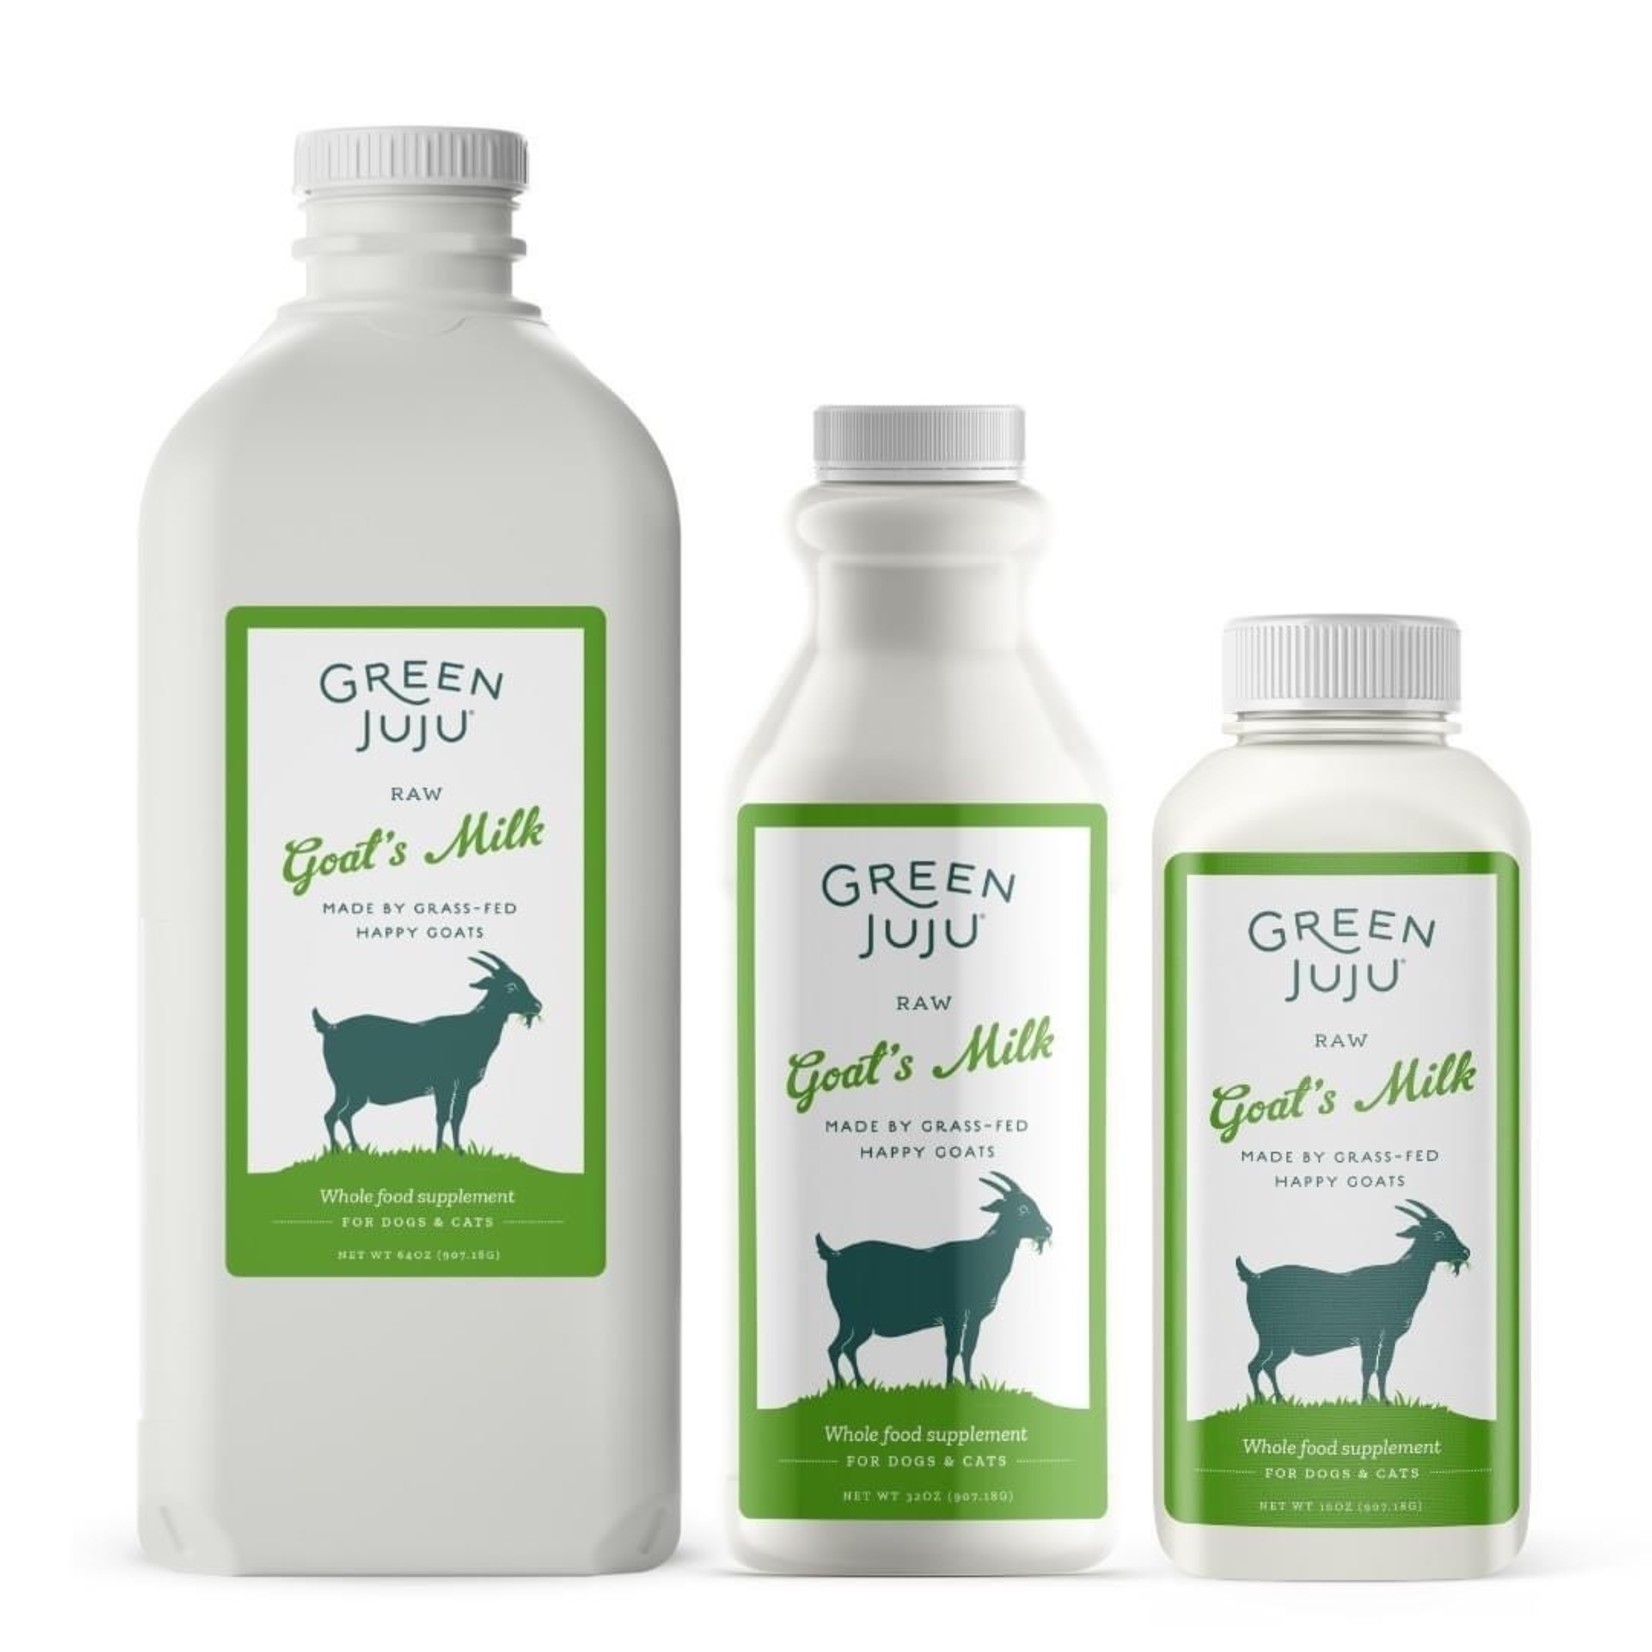 Green Juju Green Juju Raw Goat's Milk